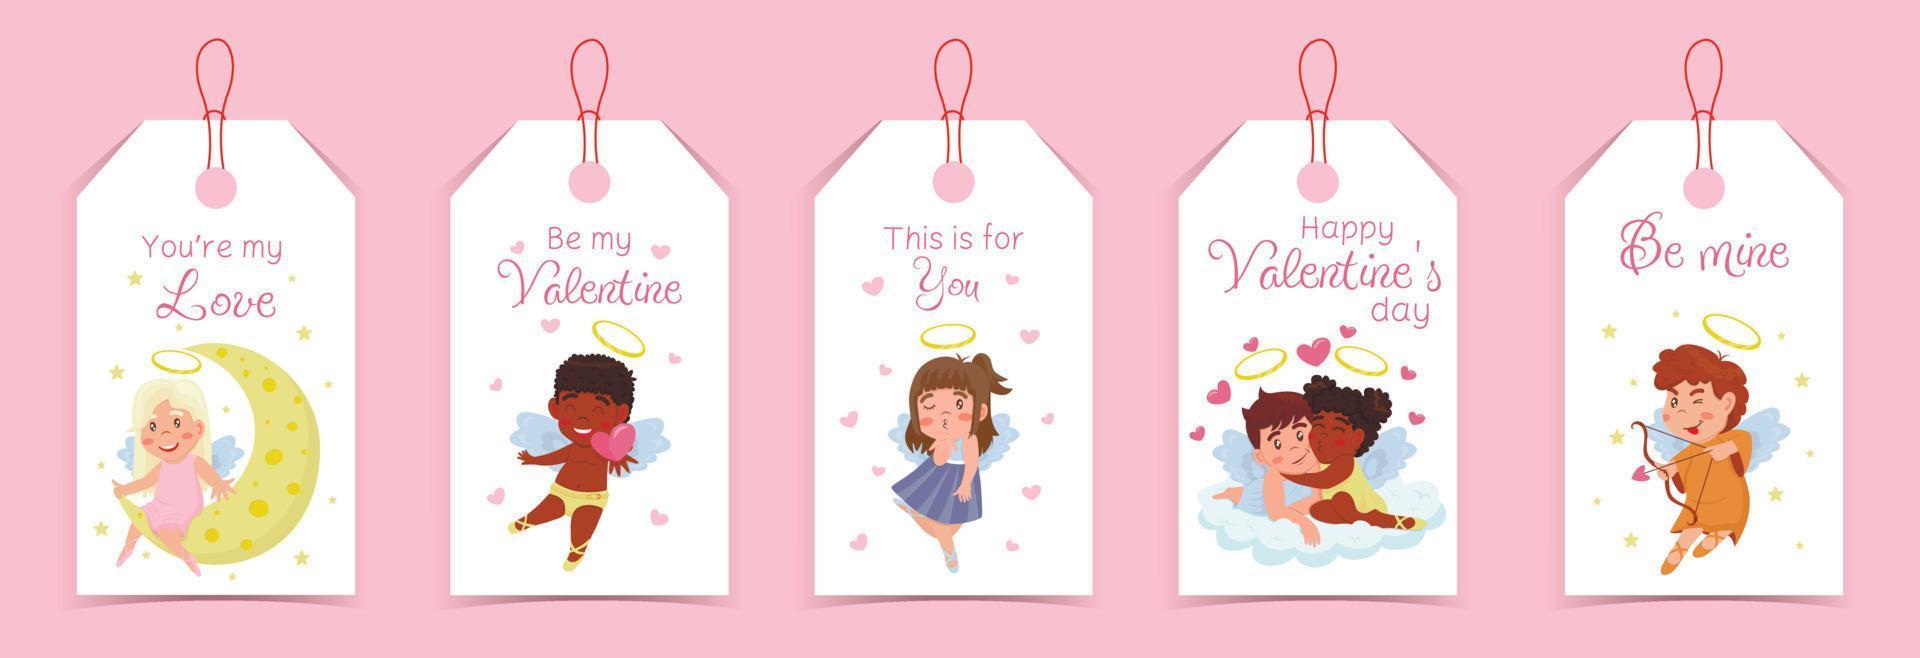 collezione di etichette di san valentino con amorini, angeli bambini e scritte carine isolate su sfondo bianco vettore